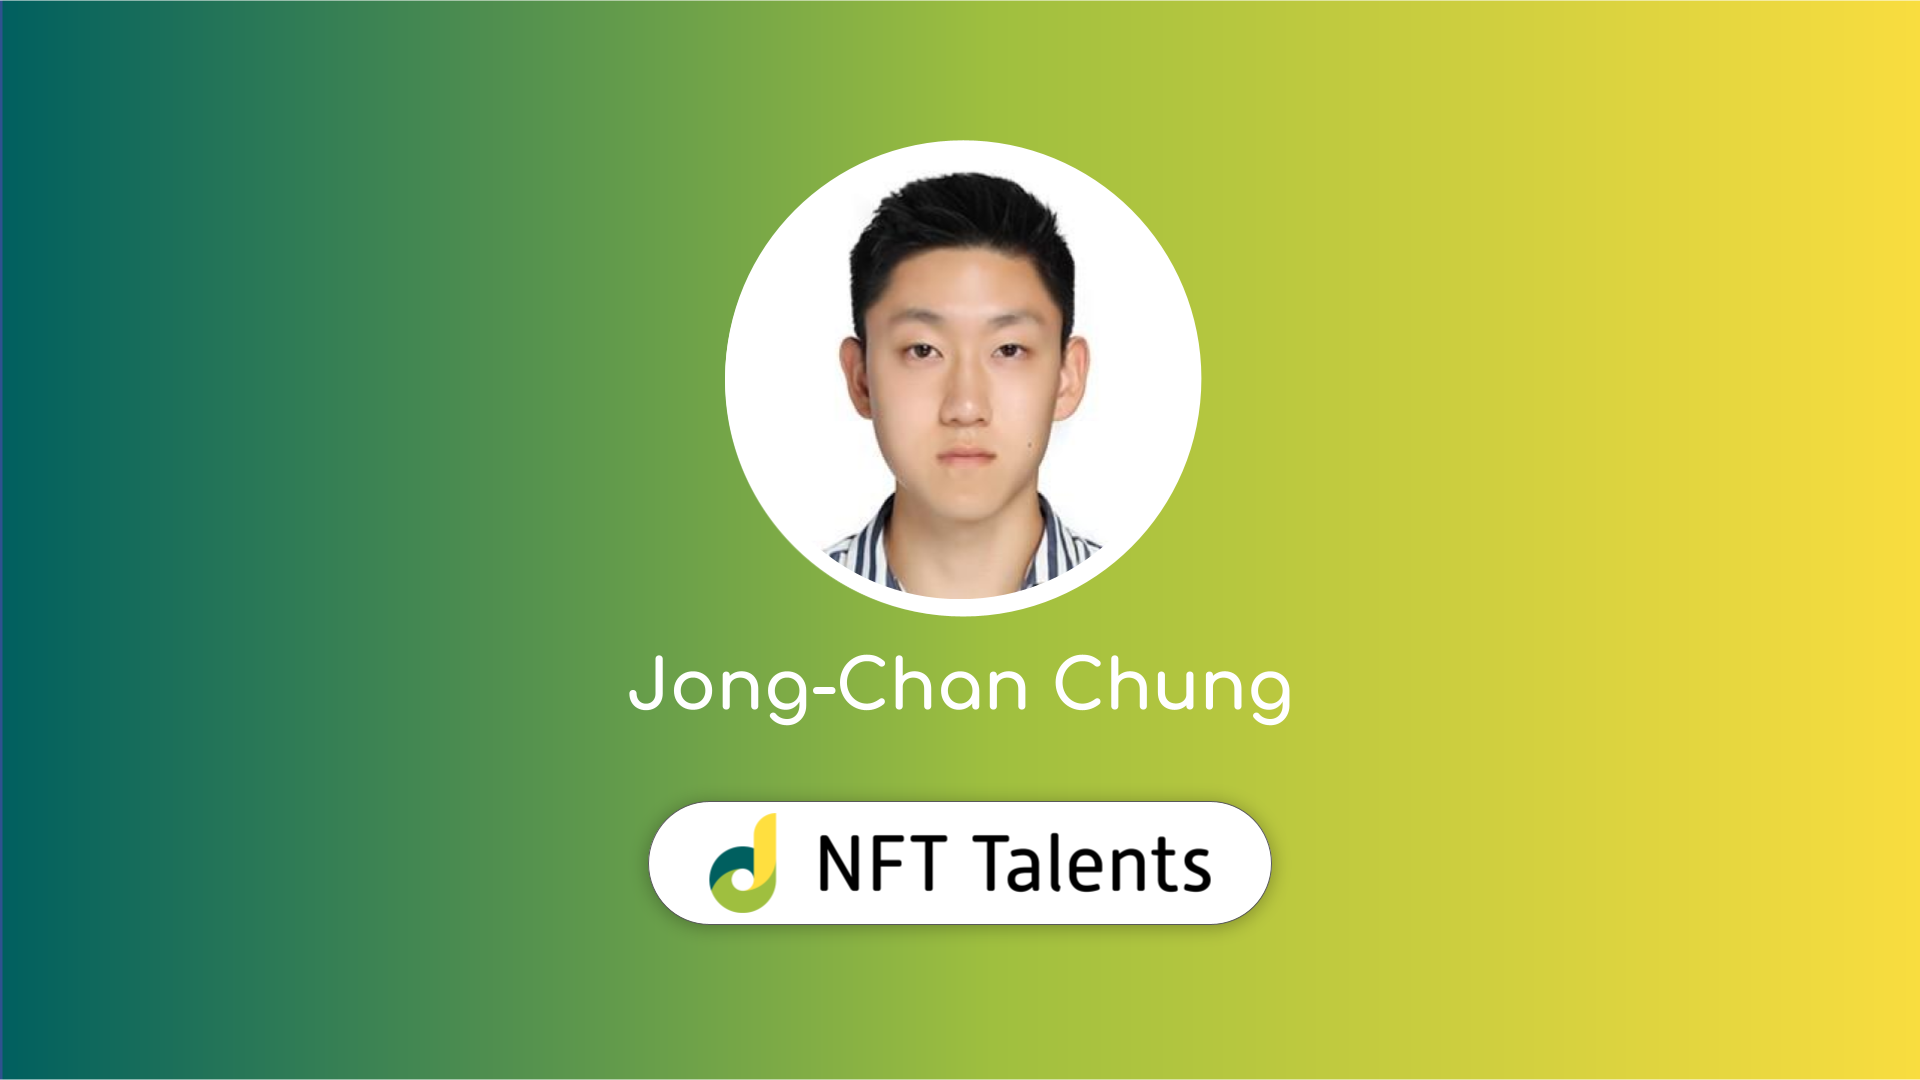 NFT Talents Mentor – Jong-Chan Chung